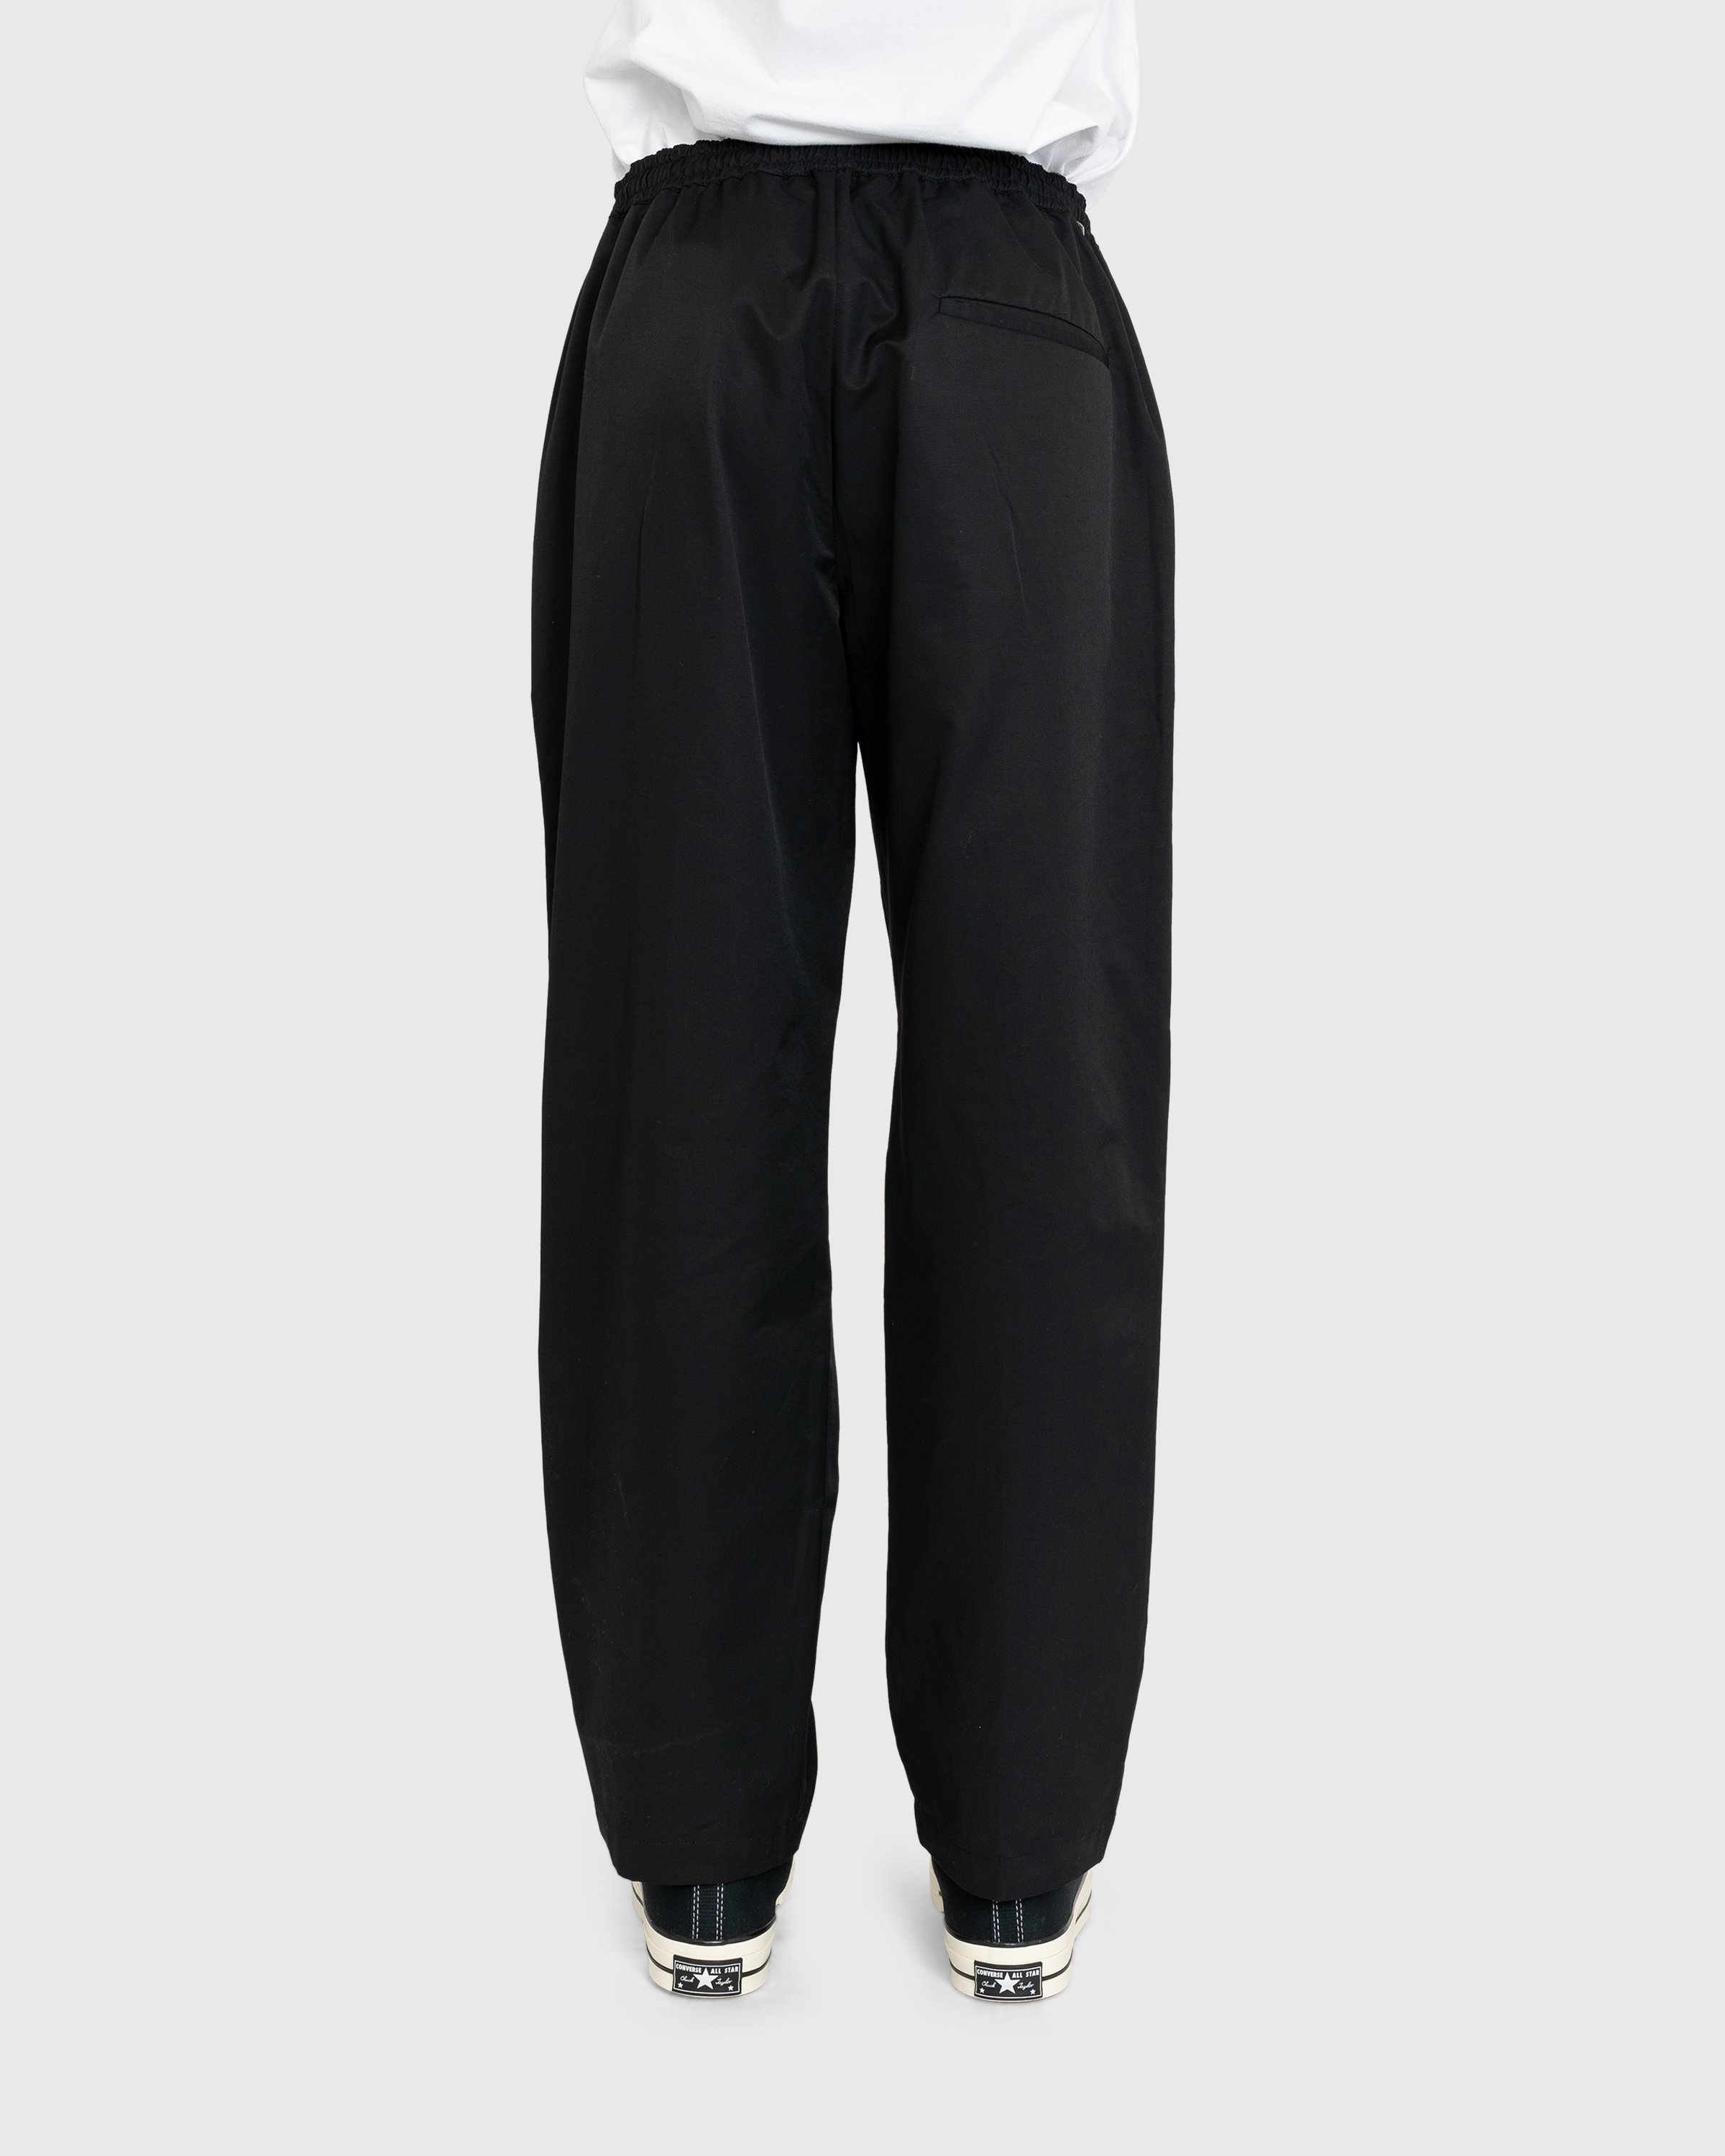 Highsnobiety - Cotton Nylon Elastic Pants Black - Clothing - Black - Image 3